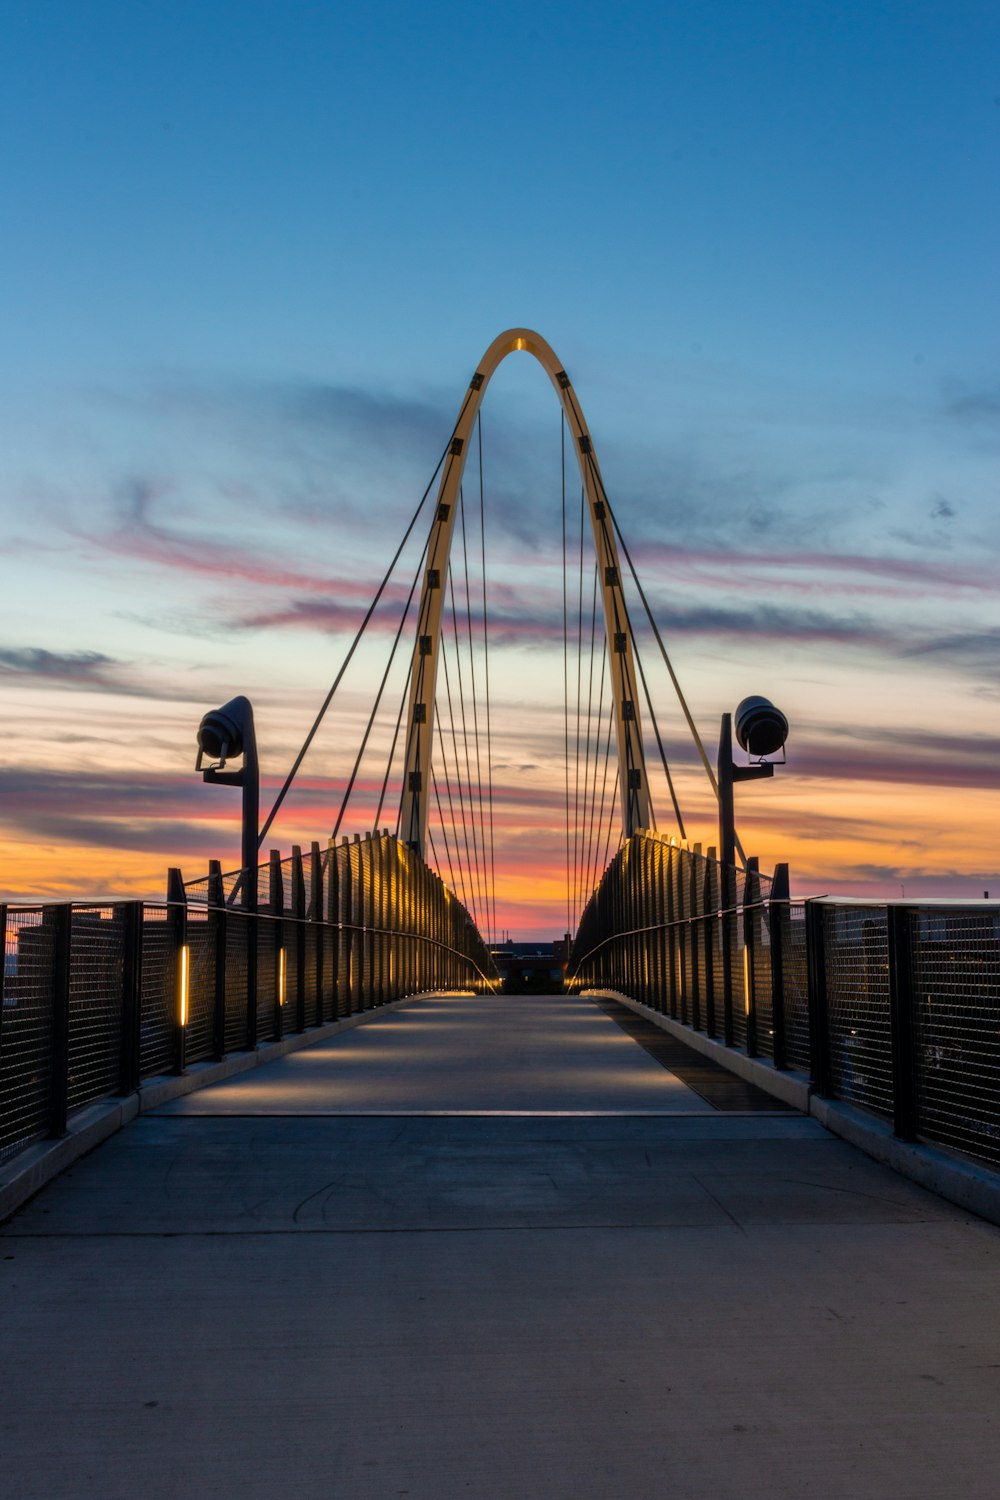 people walking on bridge during sunset